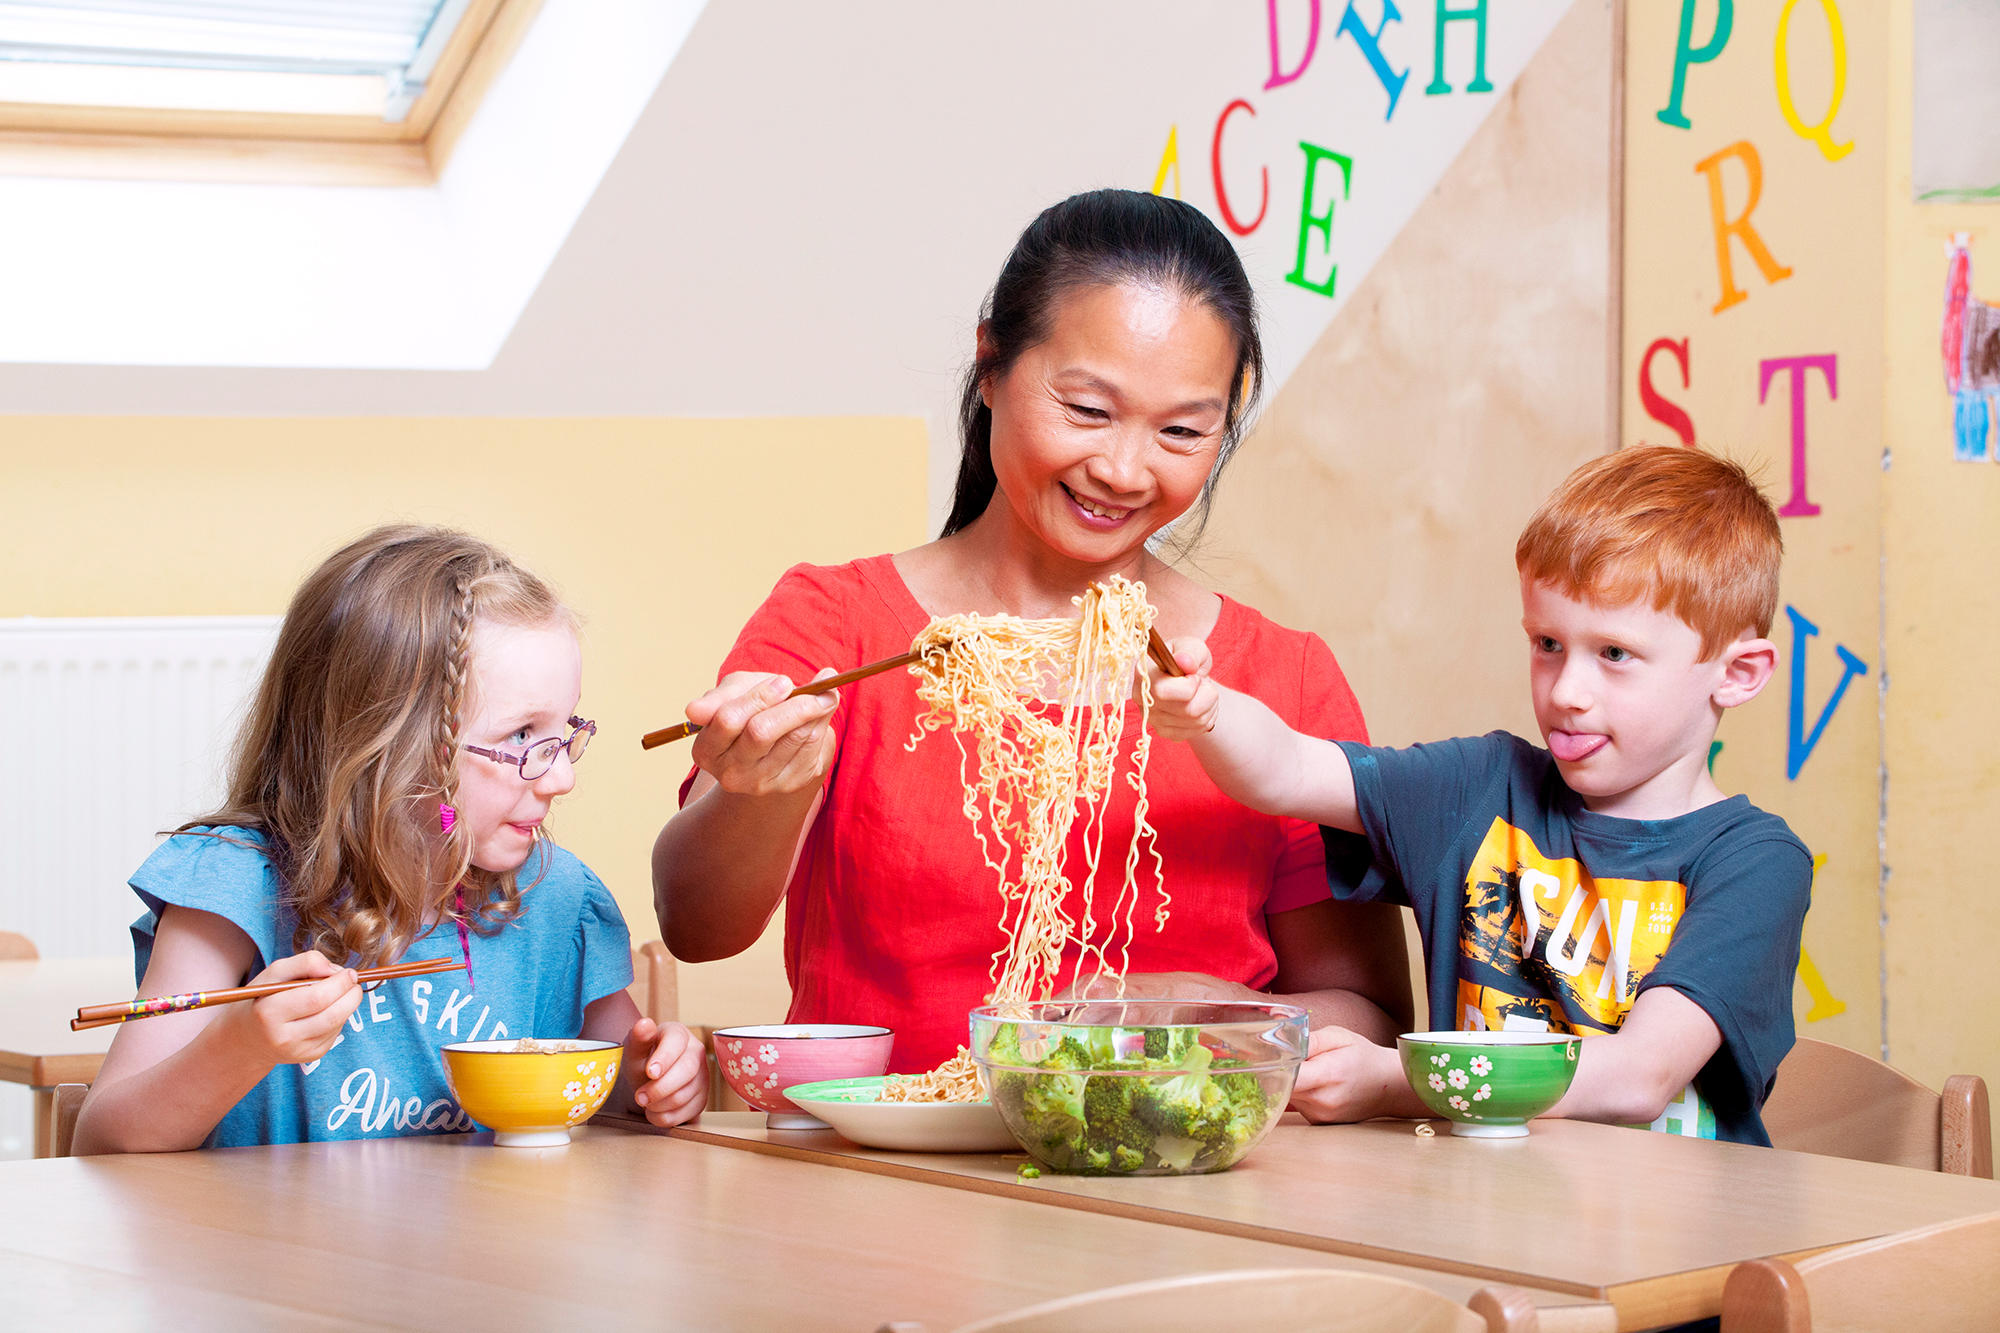 mit Stäbchen essen, asiatische Kultur, außereuropäische Kulturen kennenlernen pme Familienservice Lernwelten Kita Kinderbetreuungseinrichtung Eltern und Kind